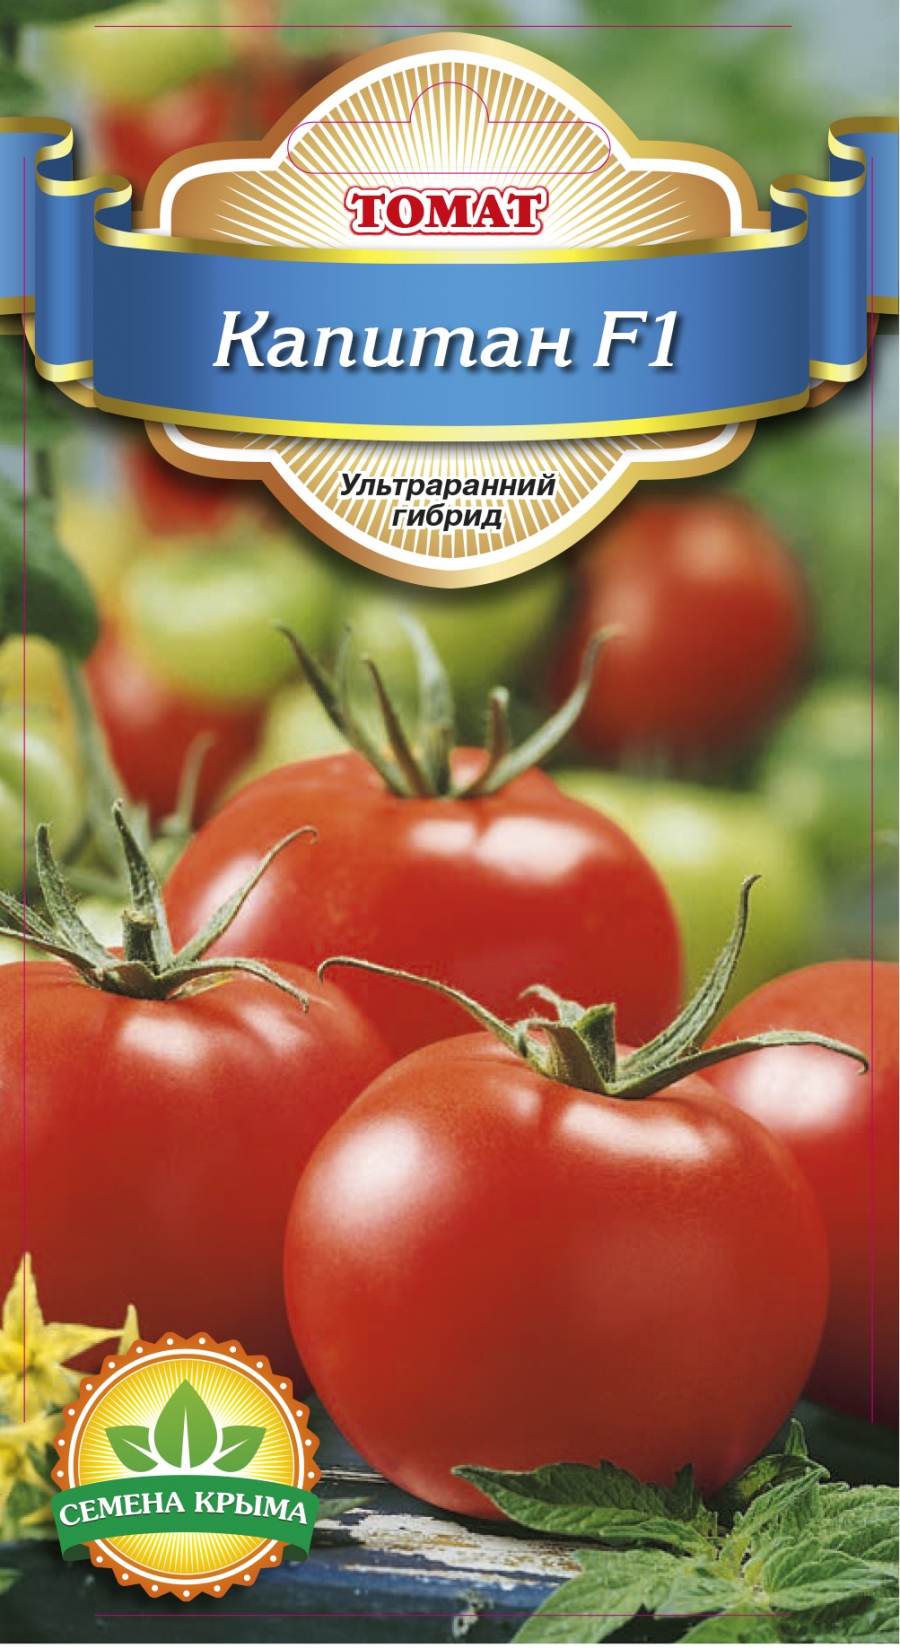 Лучшие новые сорта и гибриды томатов для теплицы и открытого грунта. список названий с фото — ботаничка